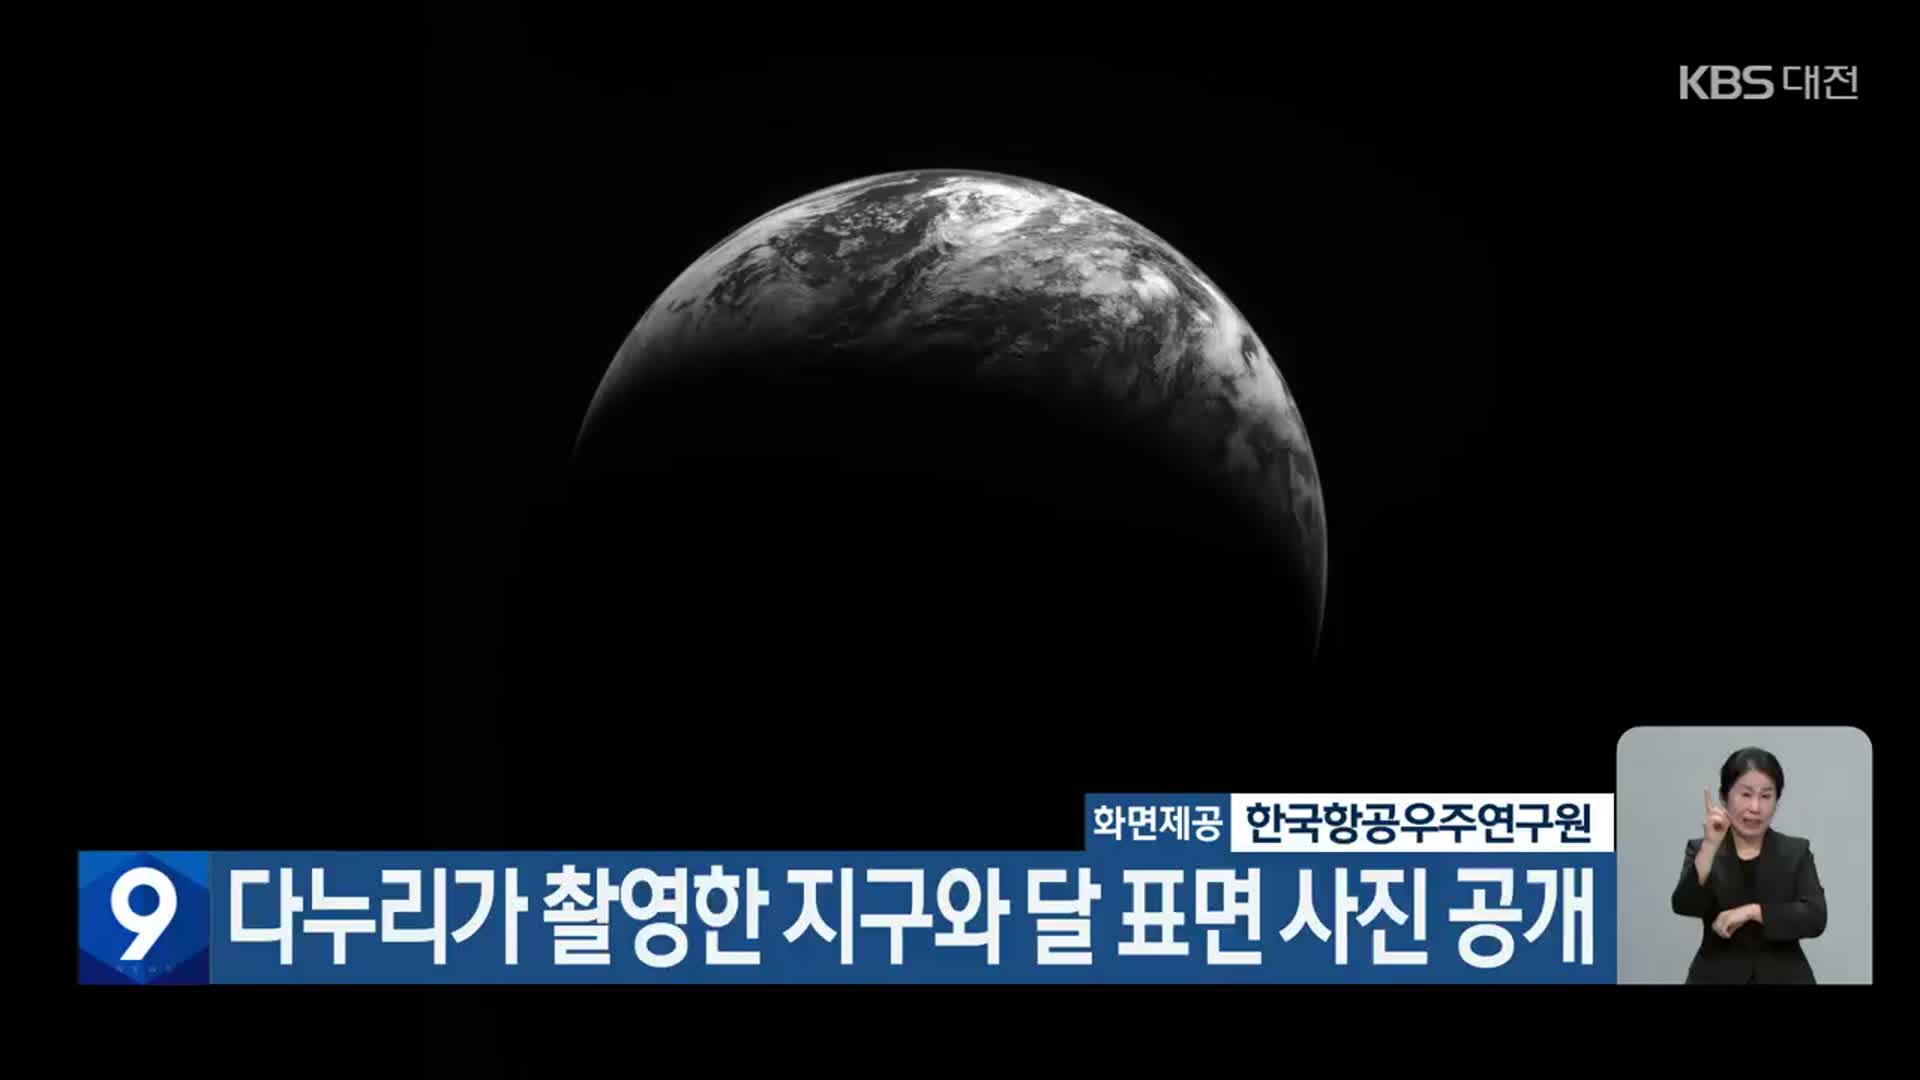 다누리가 촬영한 지구와 달 표면 사진 공개